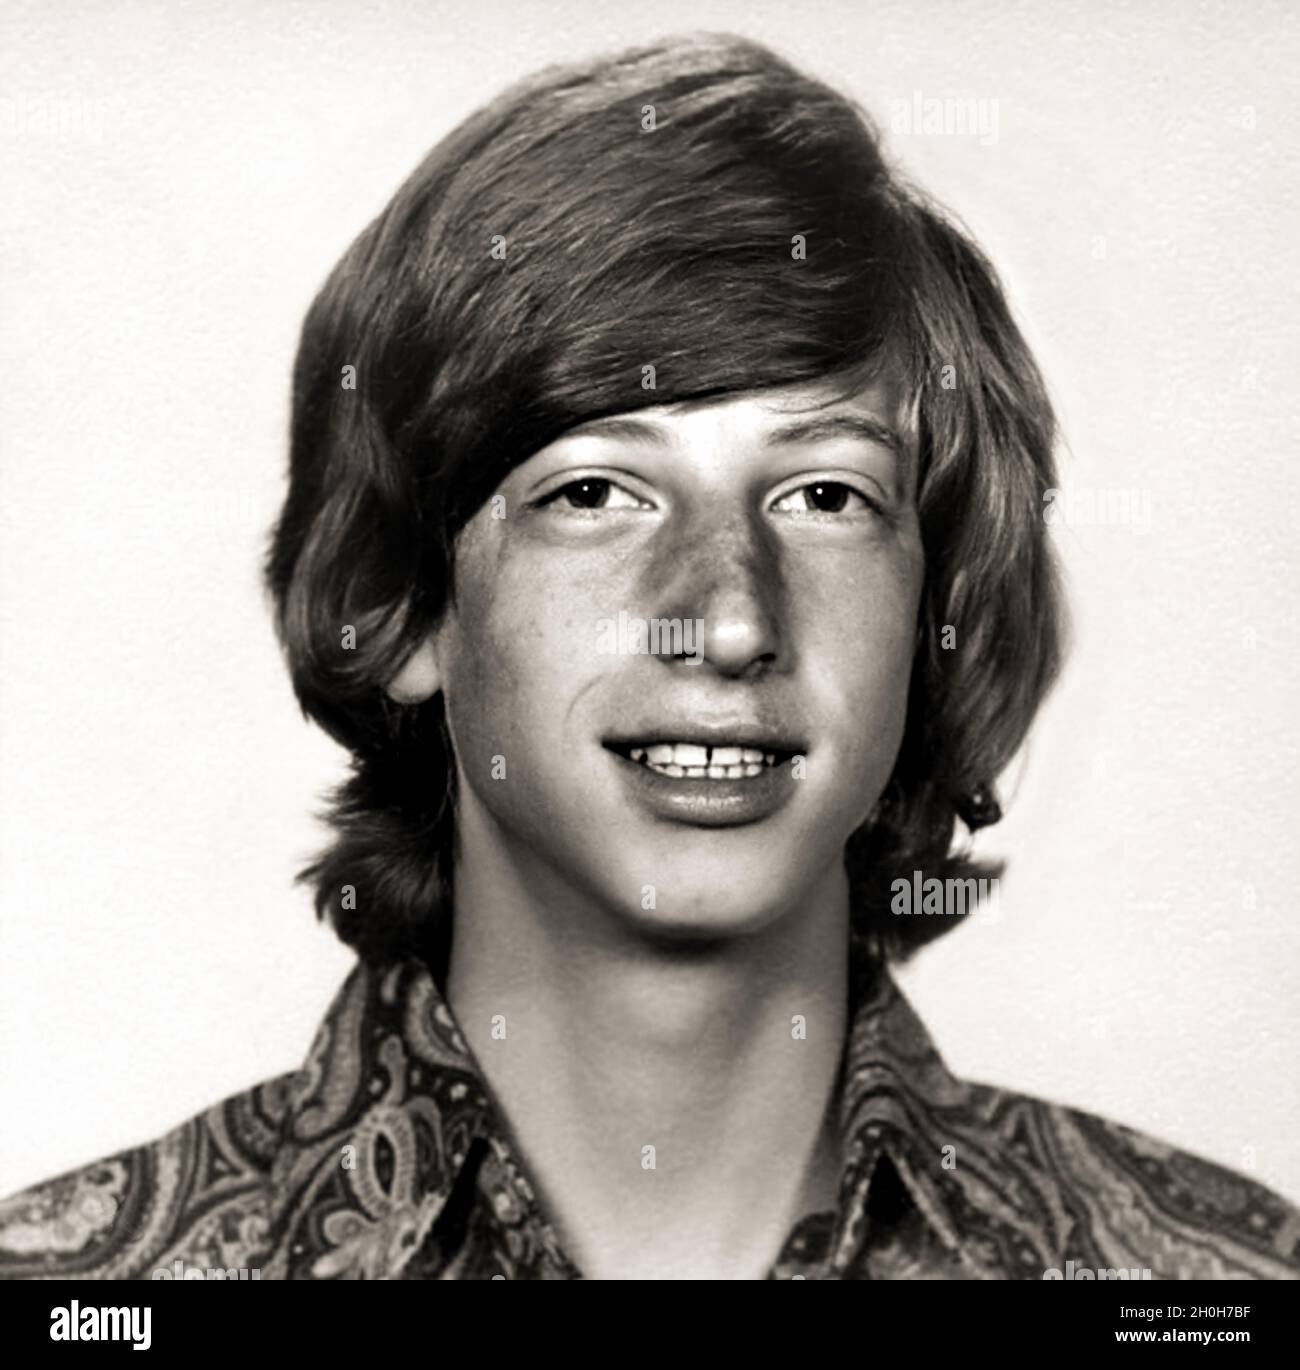 1972 CA, Etats-Unis : le célèbre BILL GATES ( bo​rn à Seattle, 28 octobre 1955​ ) quand était un jeune garçon âgé de 17 ans à l'école secondaire .Magnat américain , investisseur et propriétaire de médias fondateur de WINDOWS MICROSOFT Company .Photographe inconnu .- INFORMATICA - INFORMATICO - INFORMATIQUE - TECHNOLOGIE INFORMATIQUE - INVENTORE - INVENTEUR - HISTOIRE - FOTO STORICHE - TYCOON - personalità da bambino bambini da giovane - personnalité personnalités quand était jeune - INFANZIA - ENFANCE - ADOLESCENT - RAGAZZO -- ARCHIVIO GBB Banque D'Images